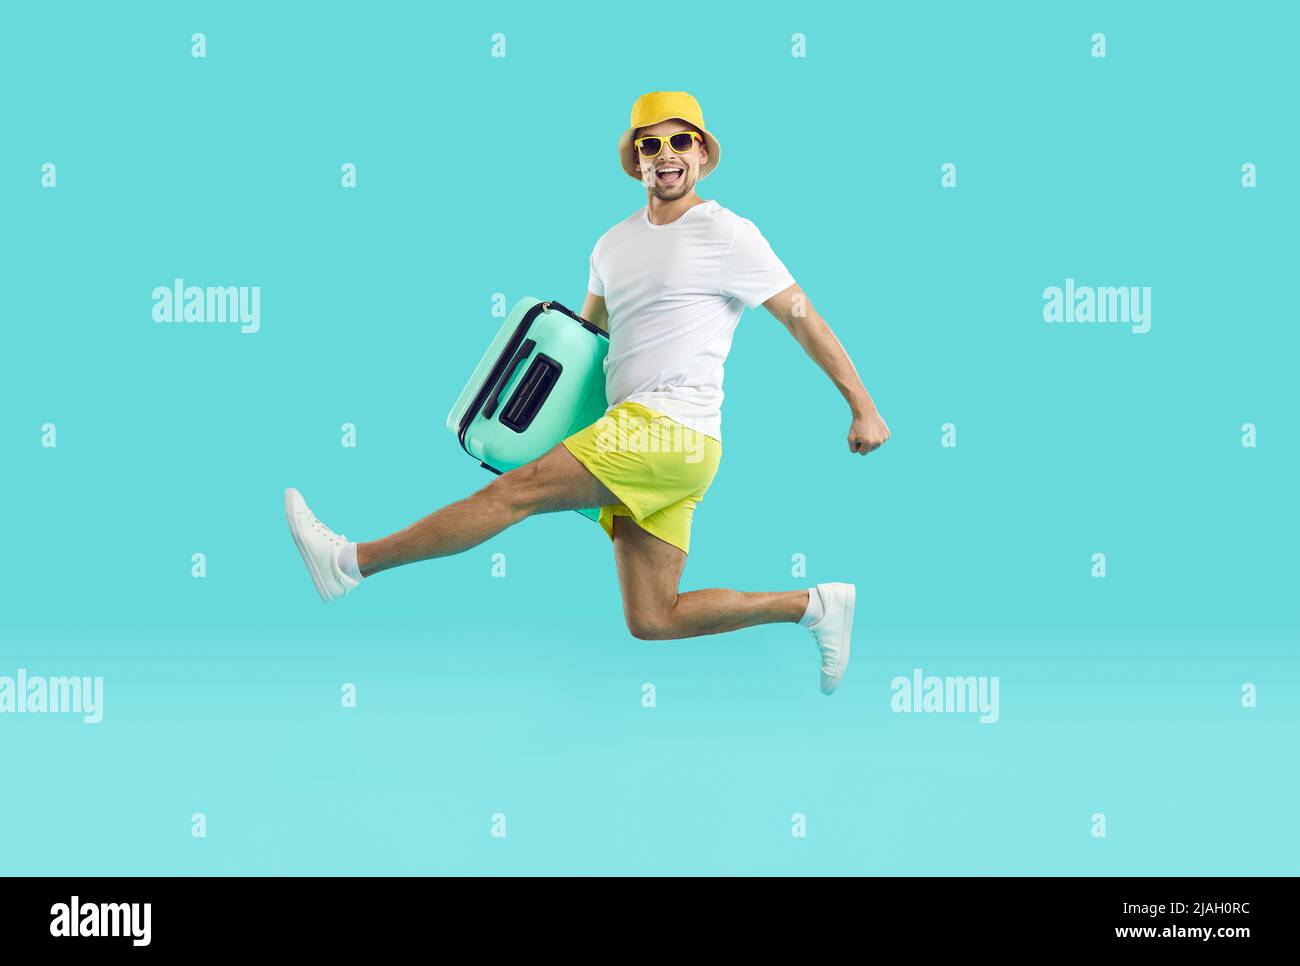 Freudig aufgeregt Kerl in Sommerkleidung läuft und springt mit Koffer auf hellblauem Hintergrund. Stockfoto